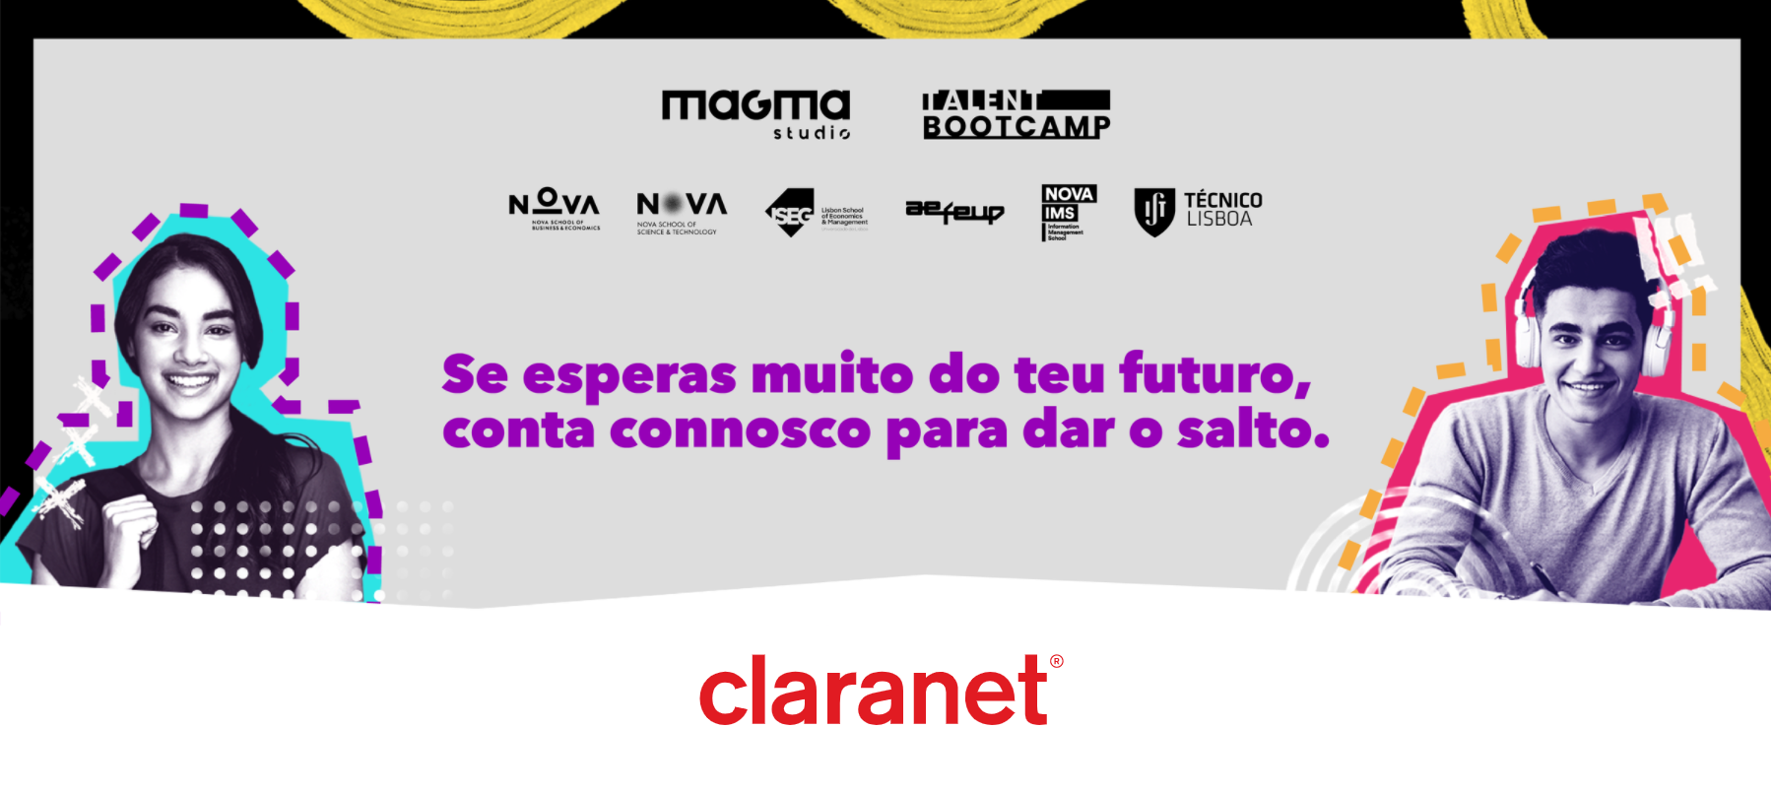 Claranet - Talent Bootcamp